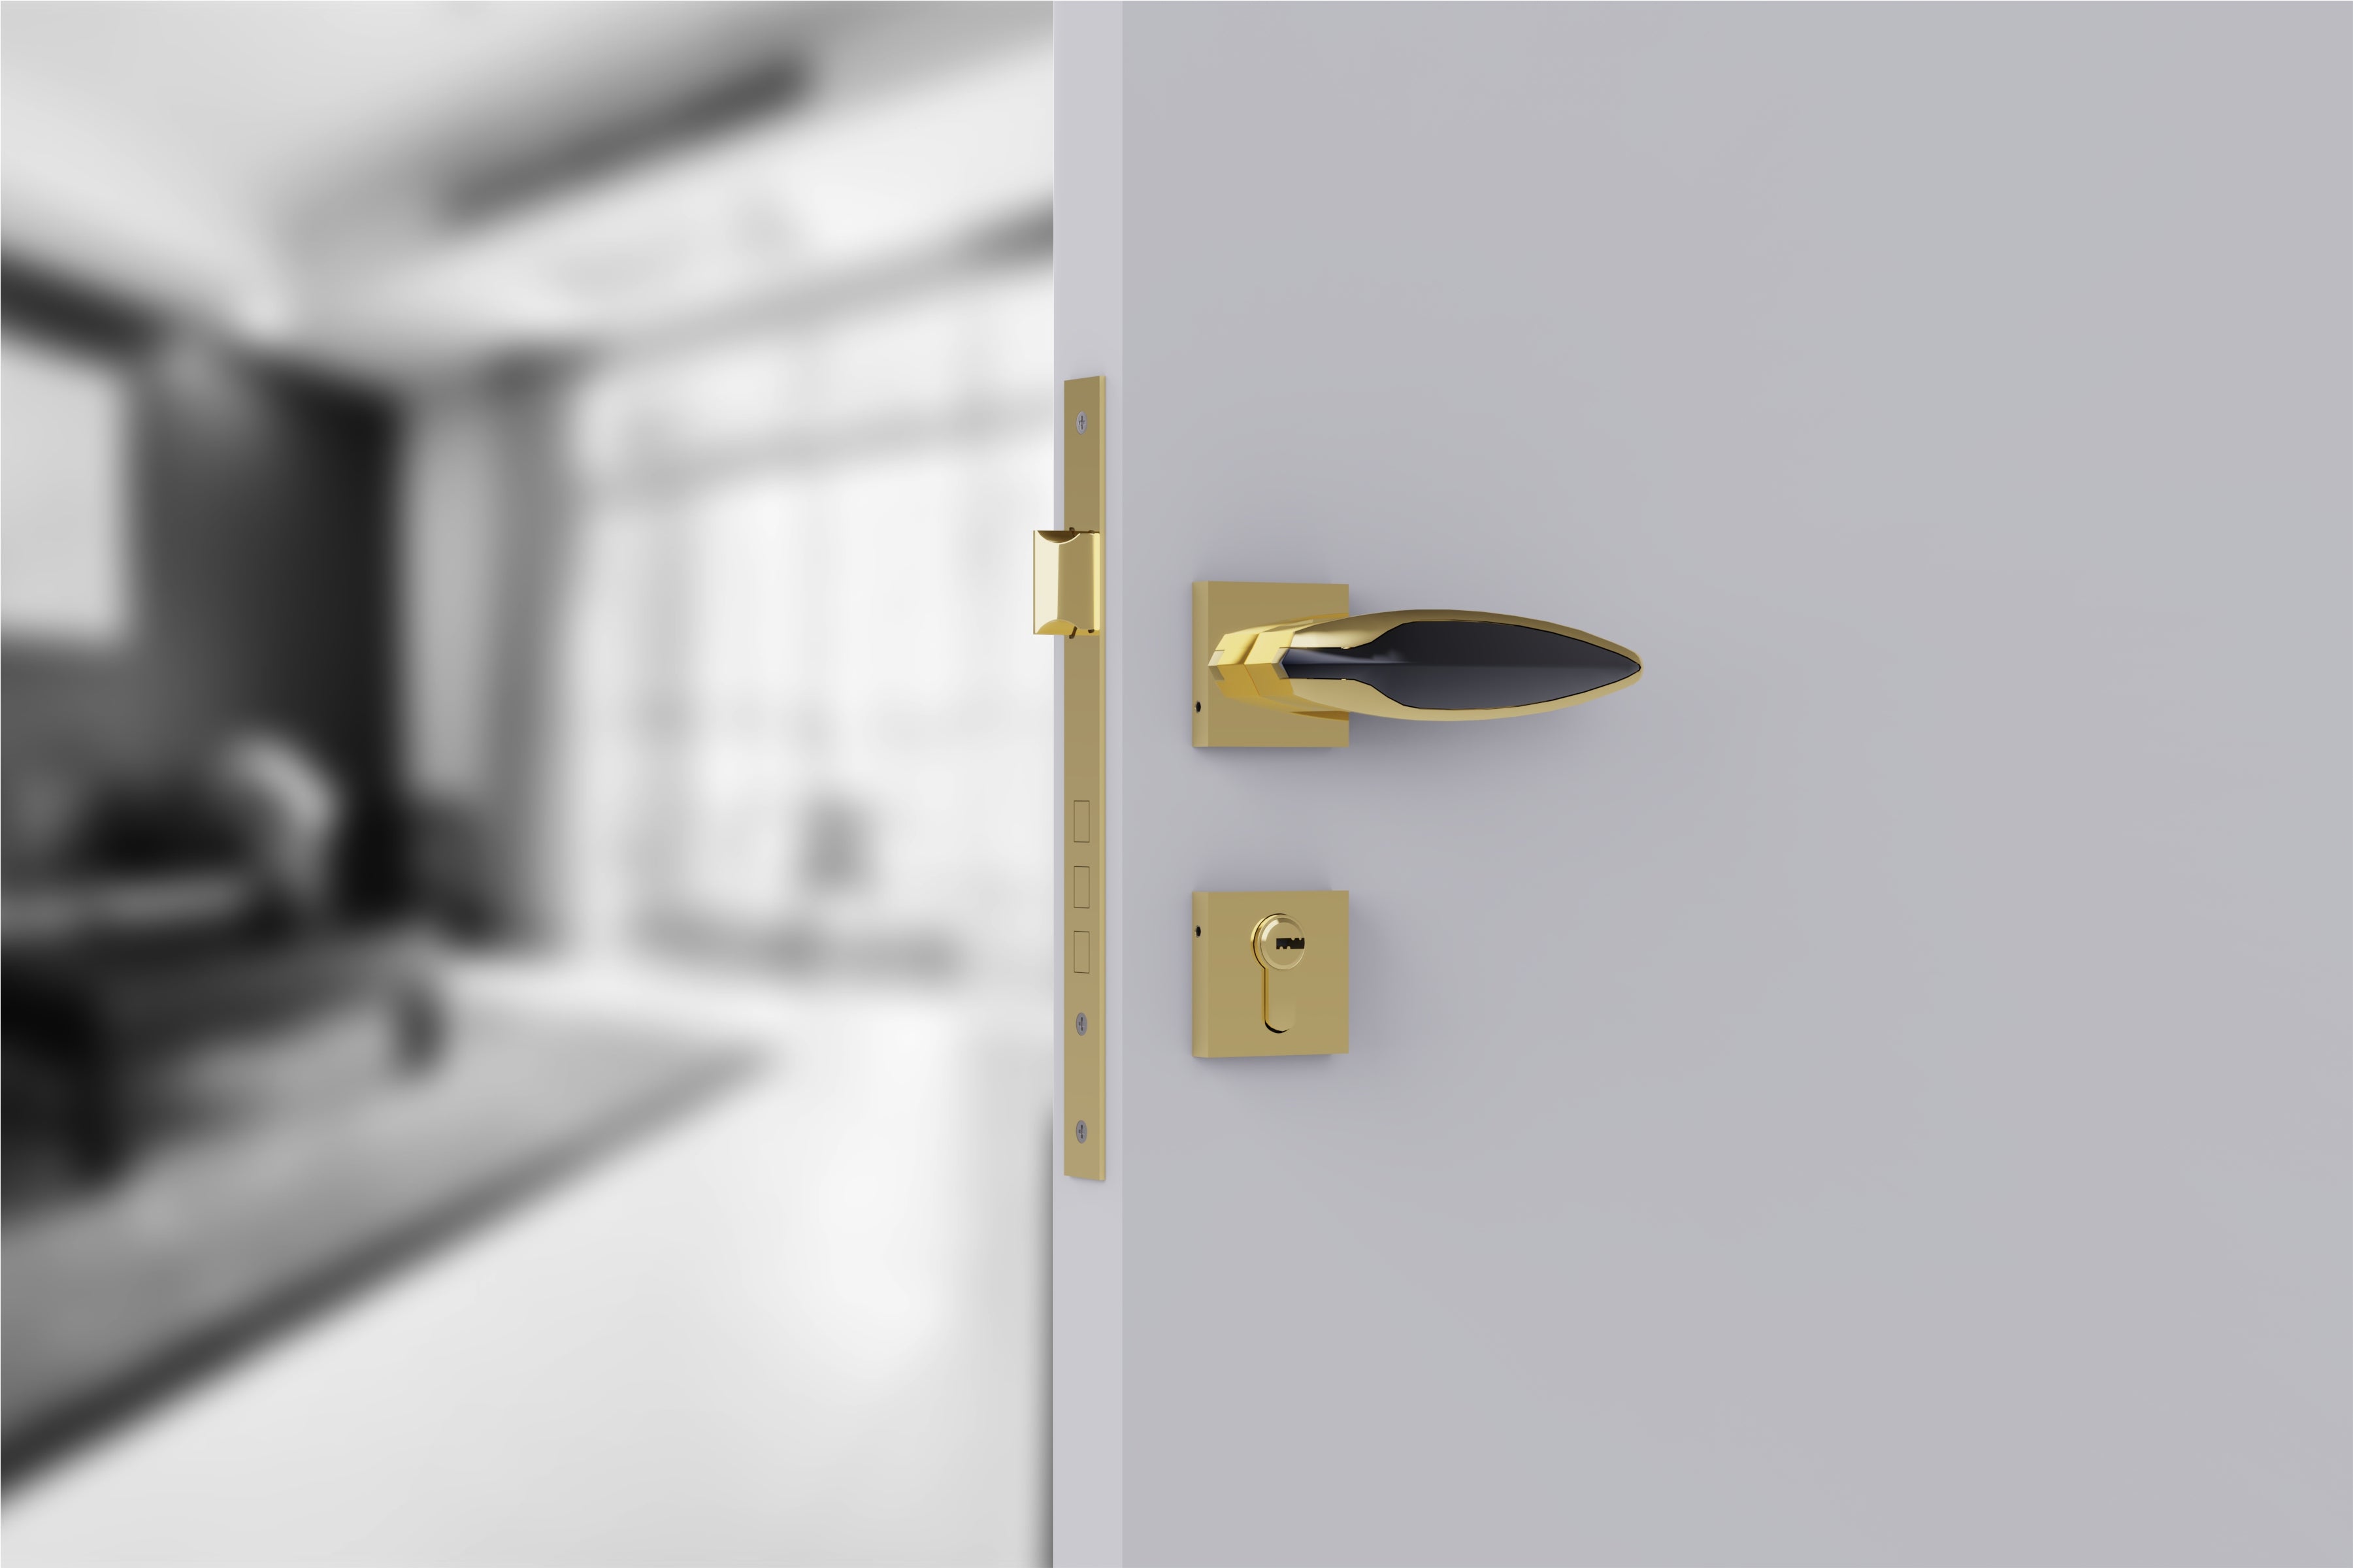 Heavy Duty Mortise Door Lock with Door Handle Lock Set for Bedroom Bathroom -by GLOXY® (Copy)